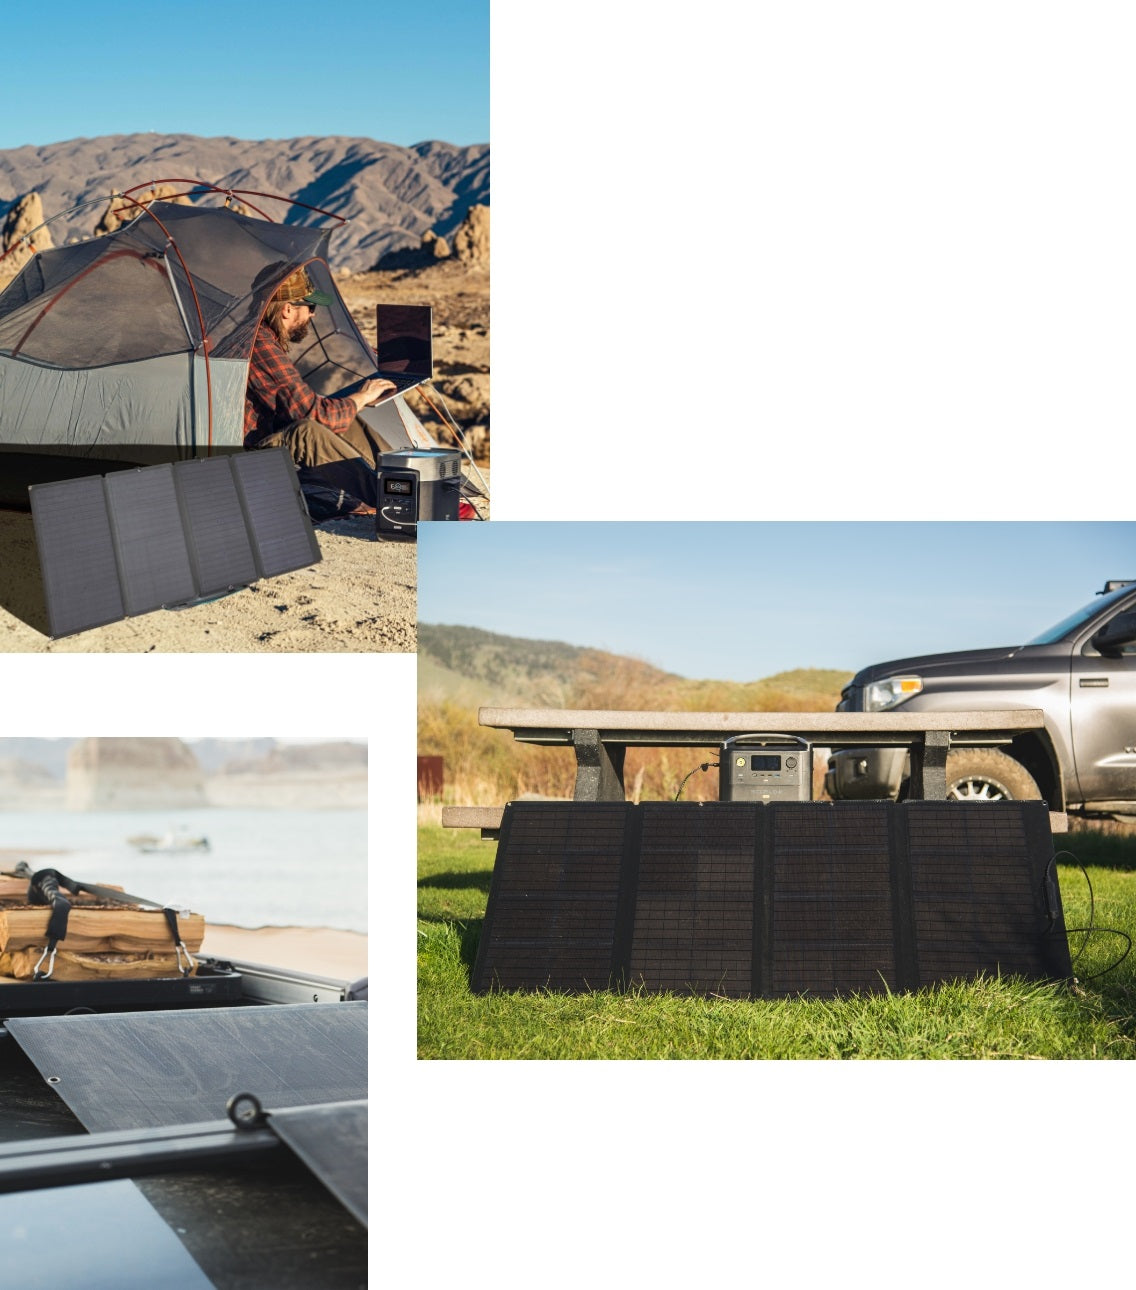 ECOFLOW panneau solaire portable 110W - Latour Tentes et Camping